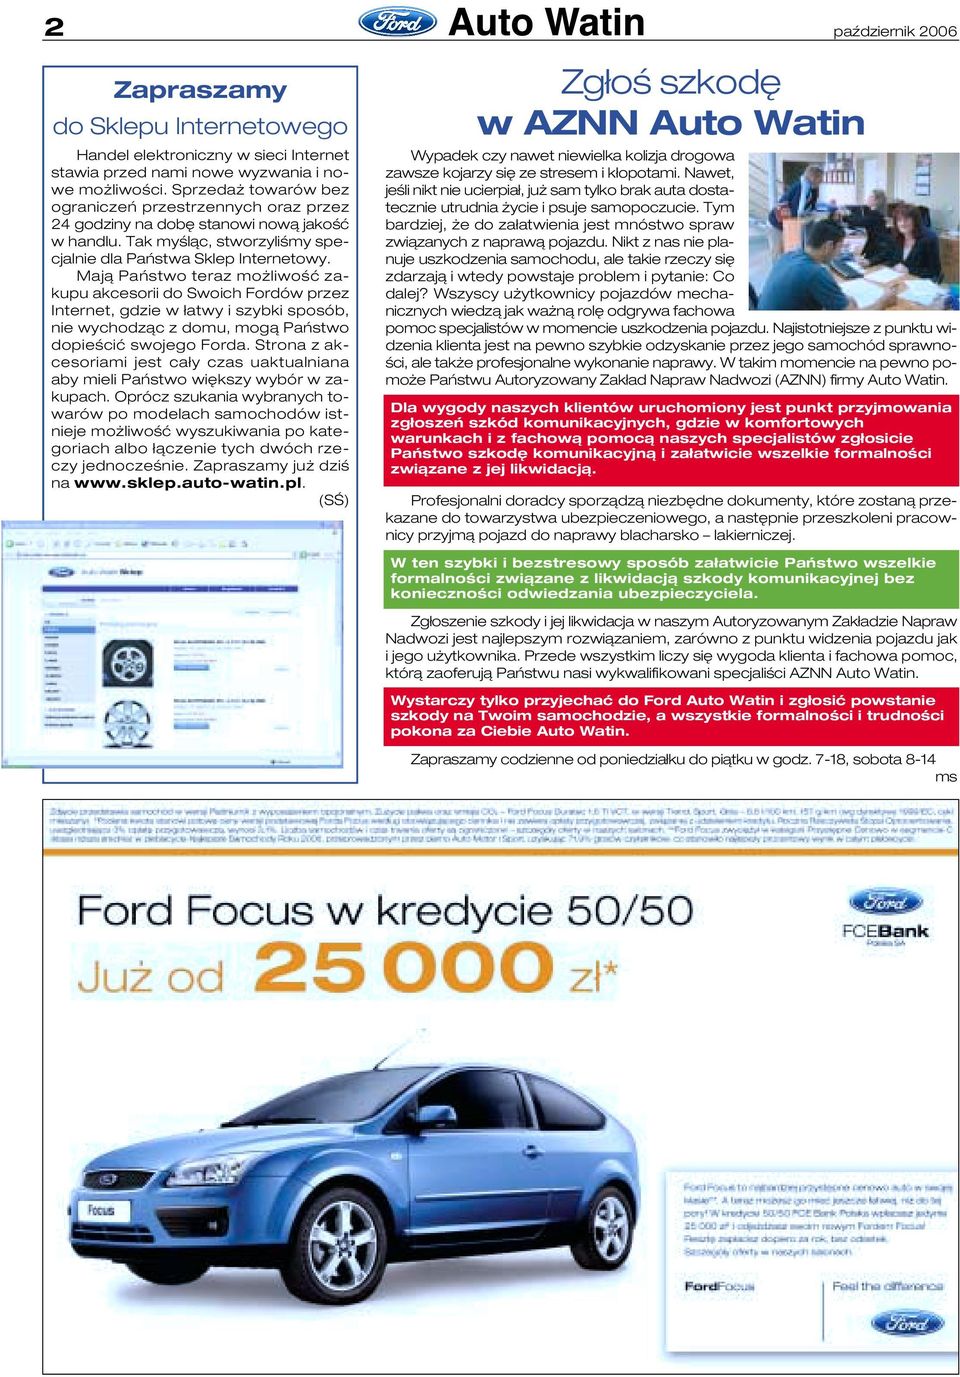 Mają Państwo teraz możliwość zakupu akcesorii do Swoich Fordów przez Internet, gdzie w łatwy i szybki sposób, nie wychodząc z domu, mogą Państwo dopieścić swojego Forda.